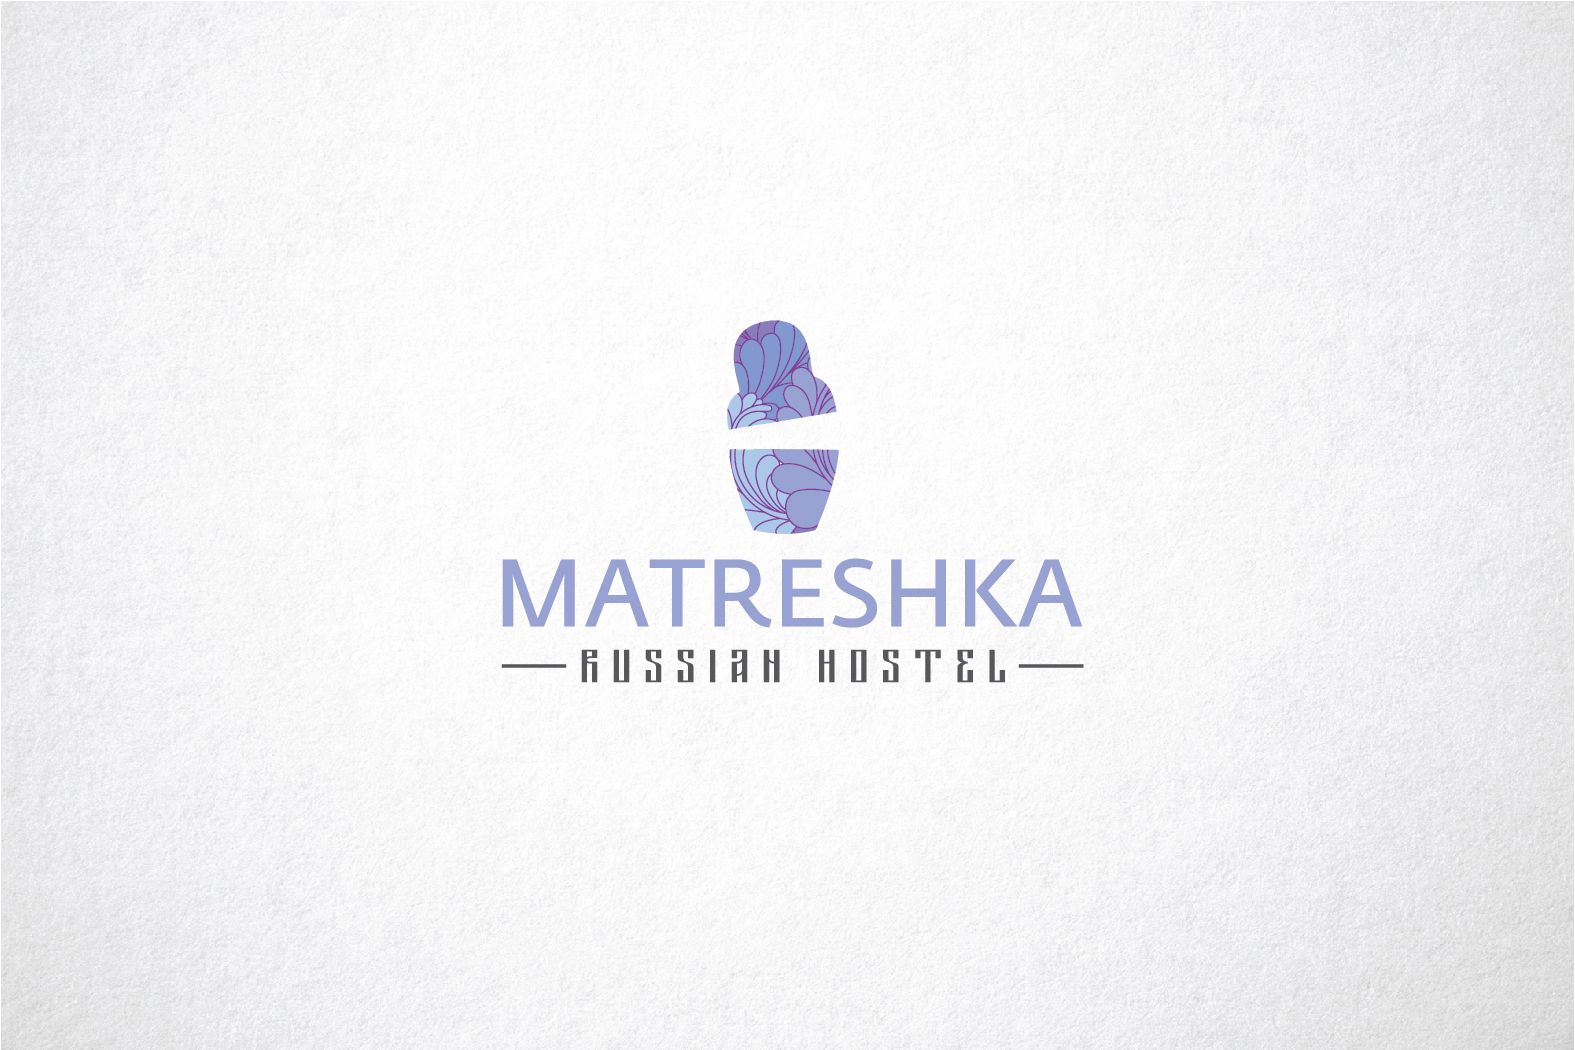 Логотип MATRESHKA Russian hostel - дизайнер funkielevis